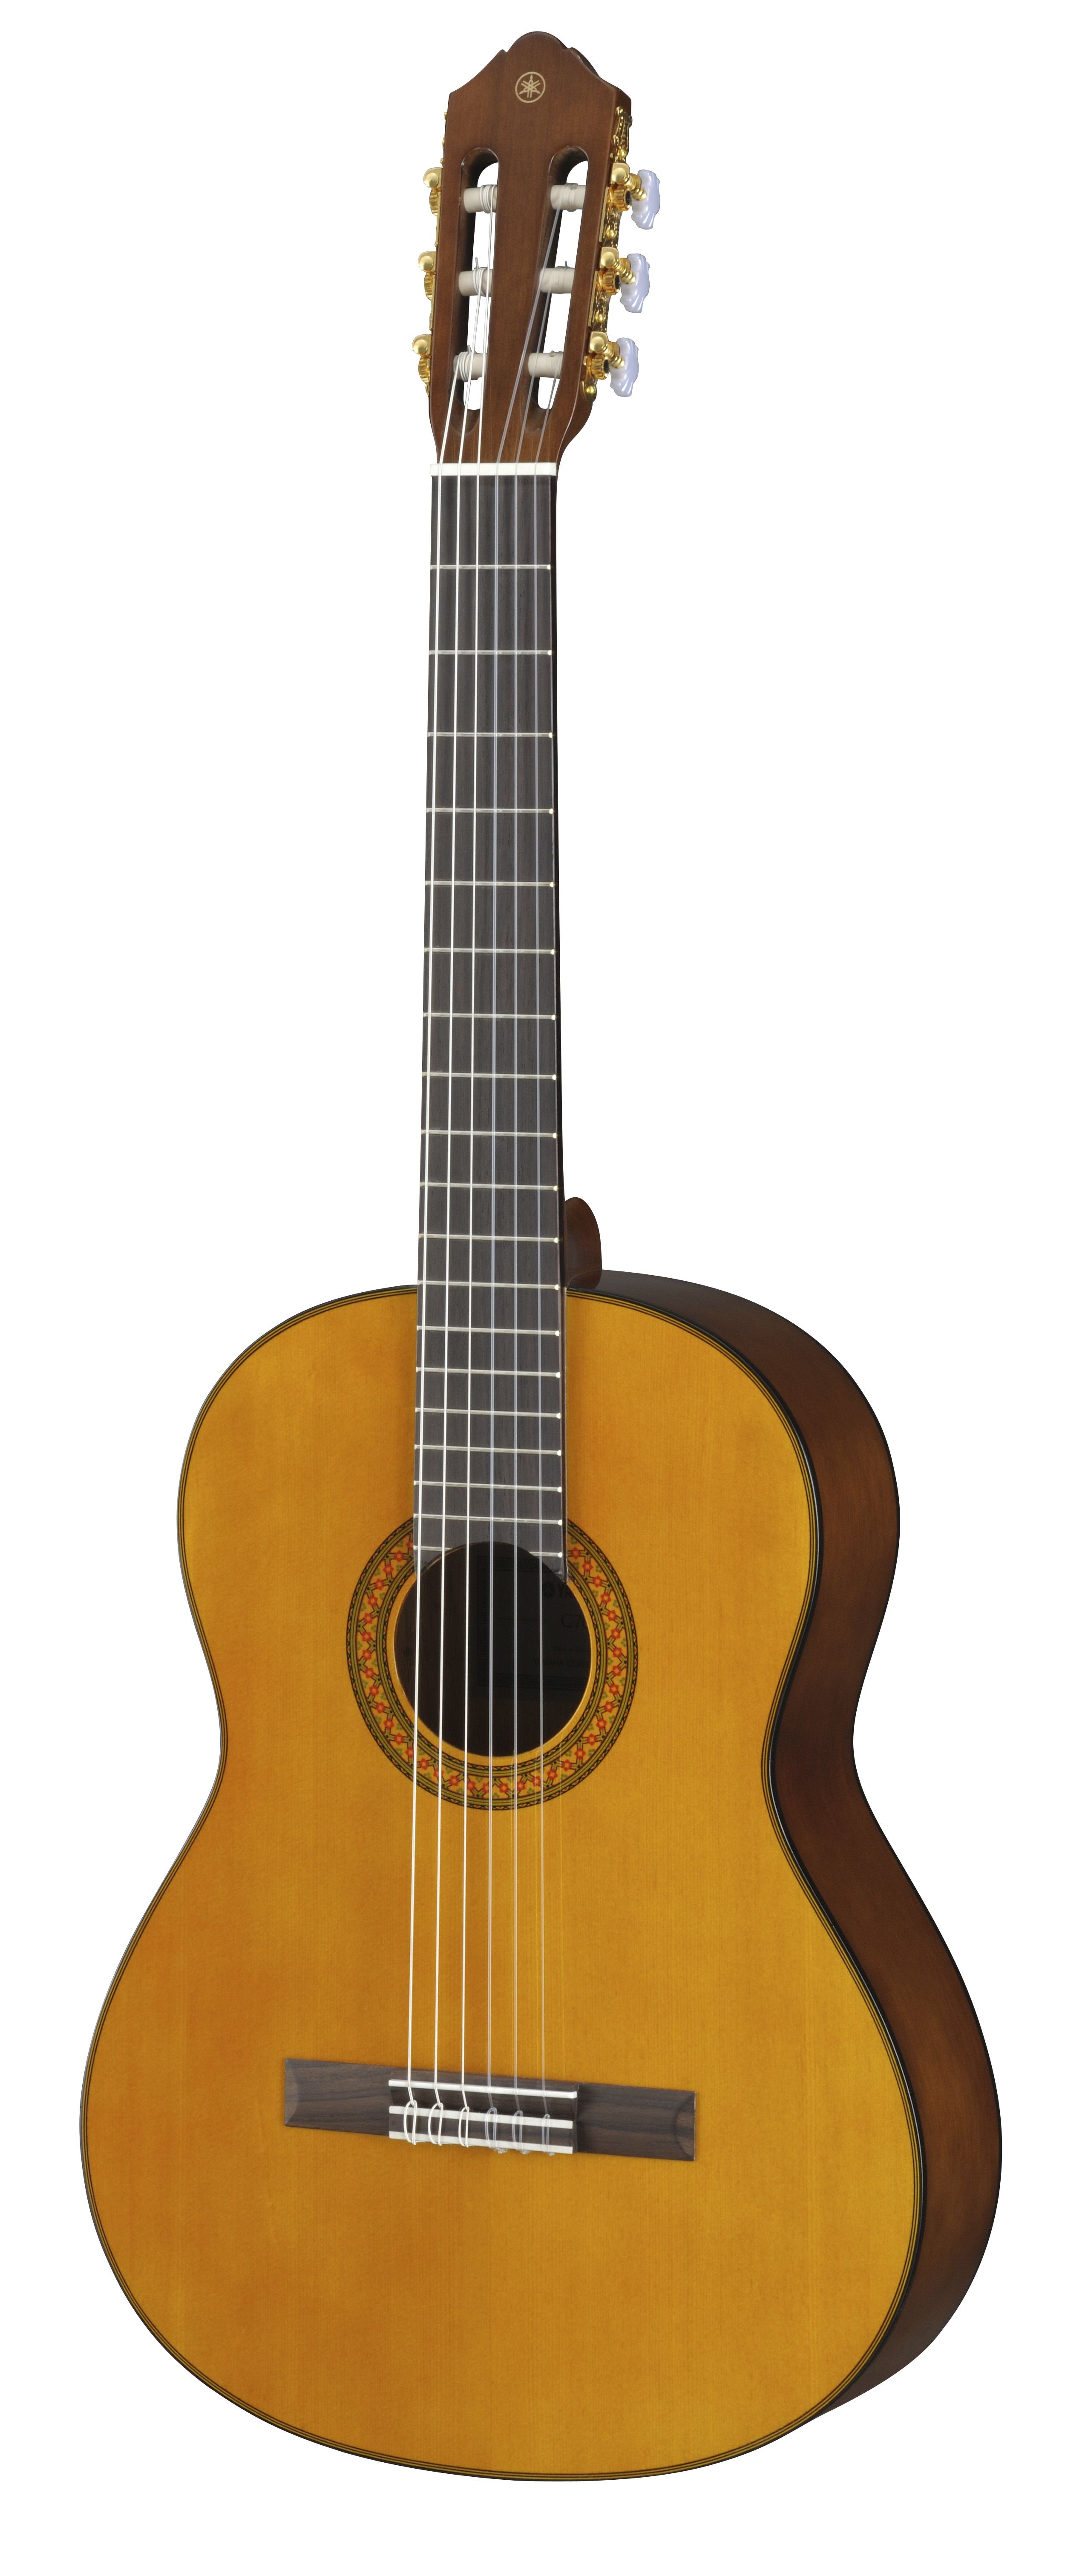 Yamaha C70 Full Size Classical Guitar